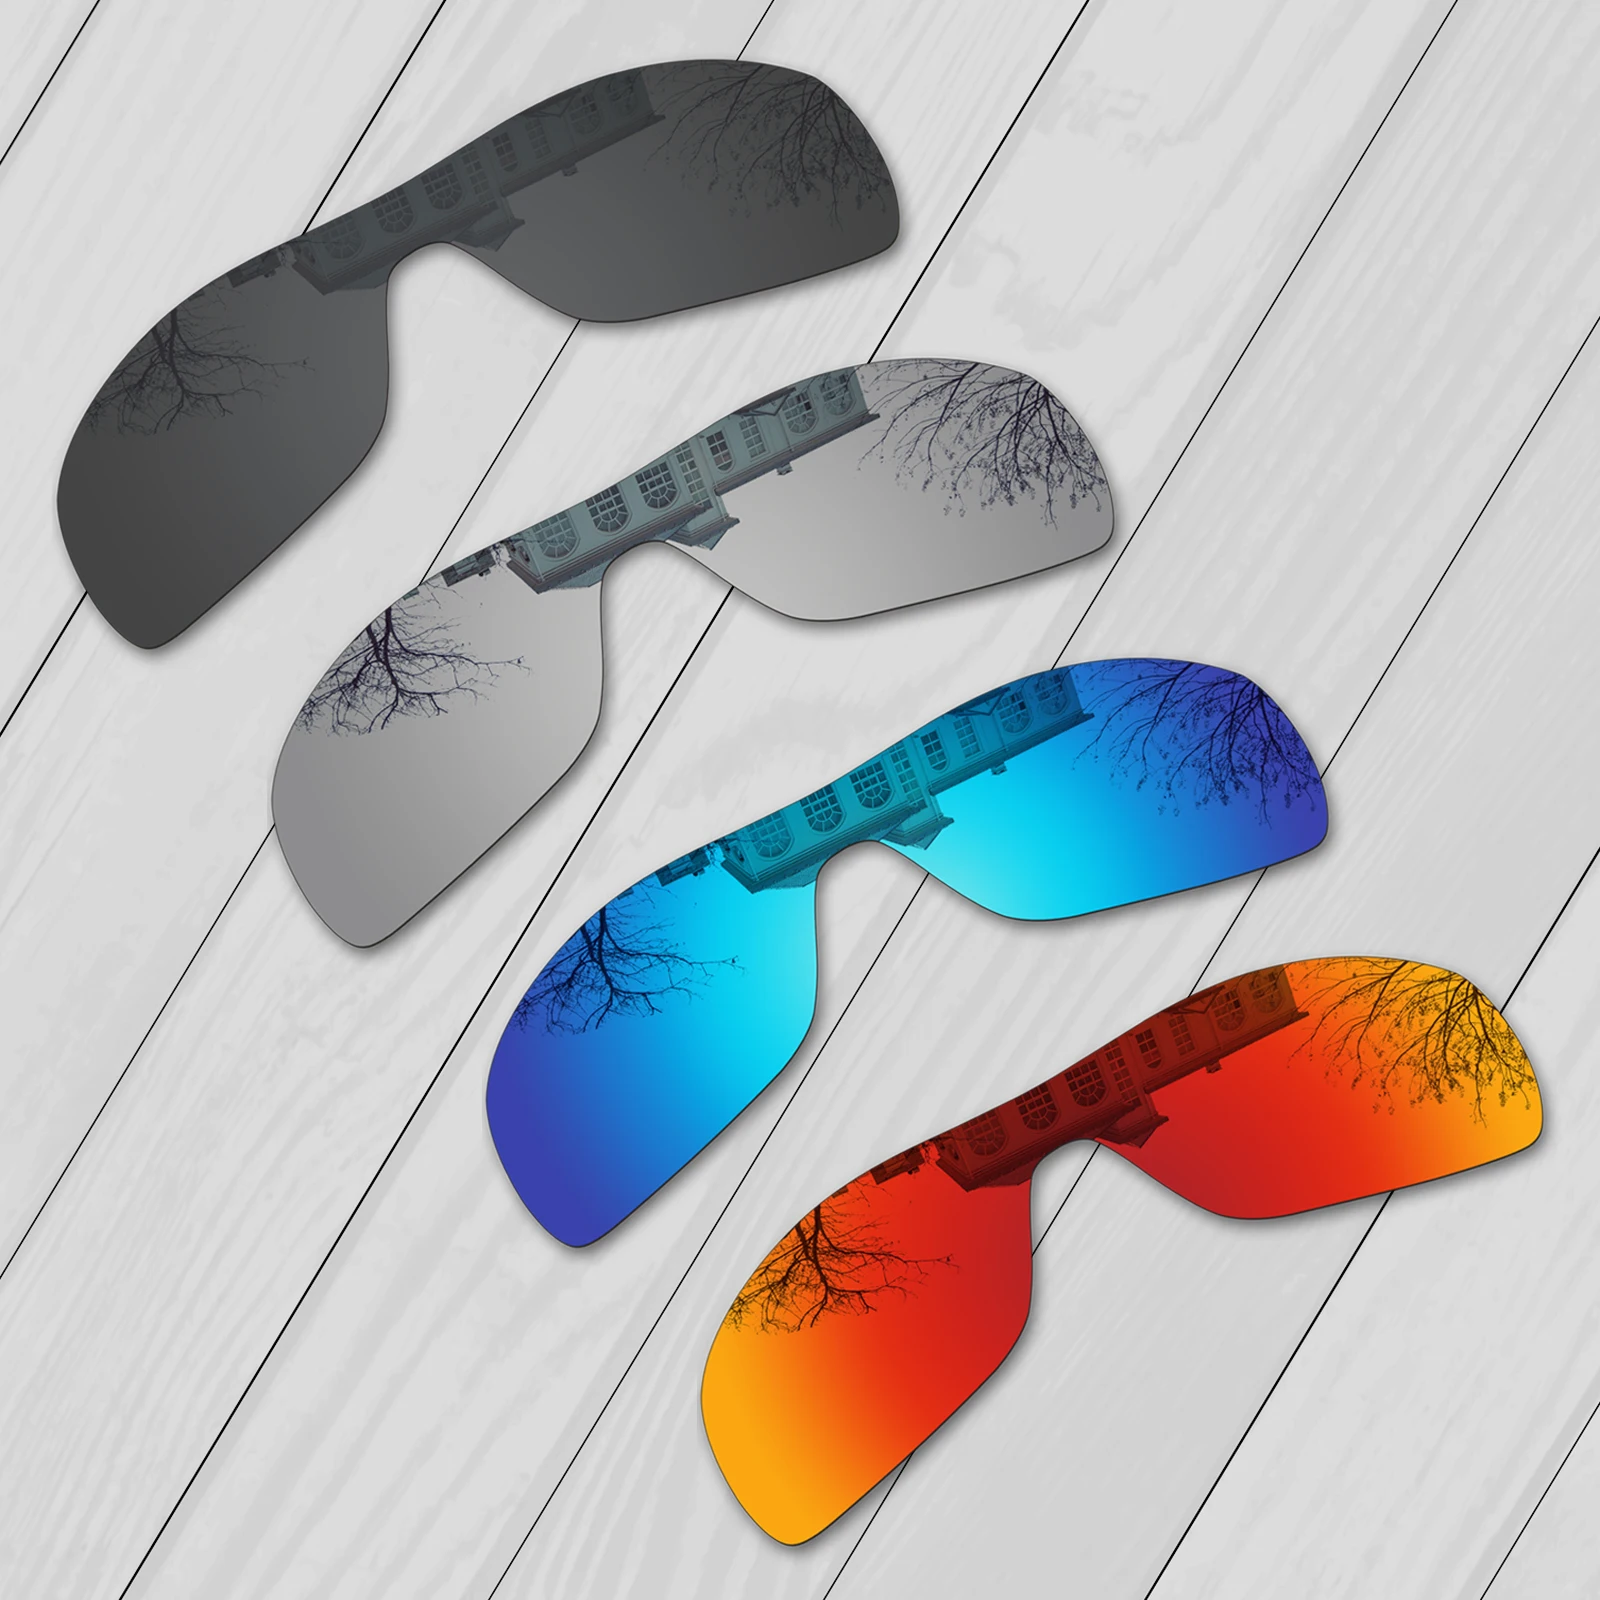 E.O.S-lentes polarizadas de repuesto para gafas de sol, lentes de sol negras, plateadas, azul hielo y rojo fuego, Rotor de turbina, OO9307, 4 unidades